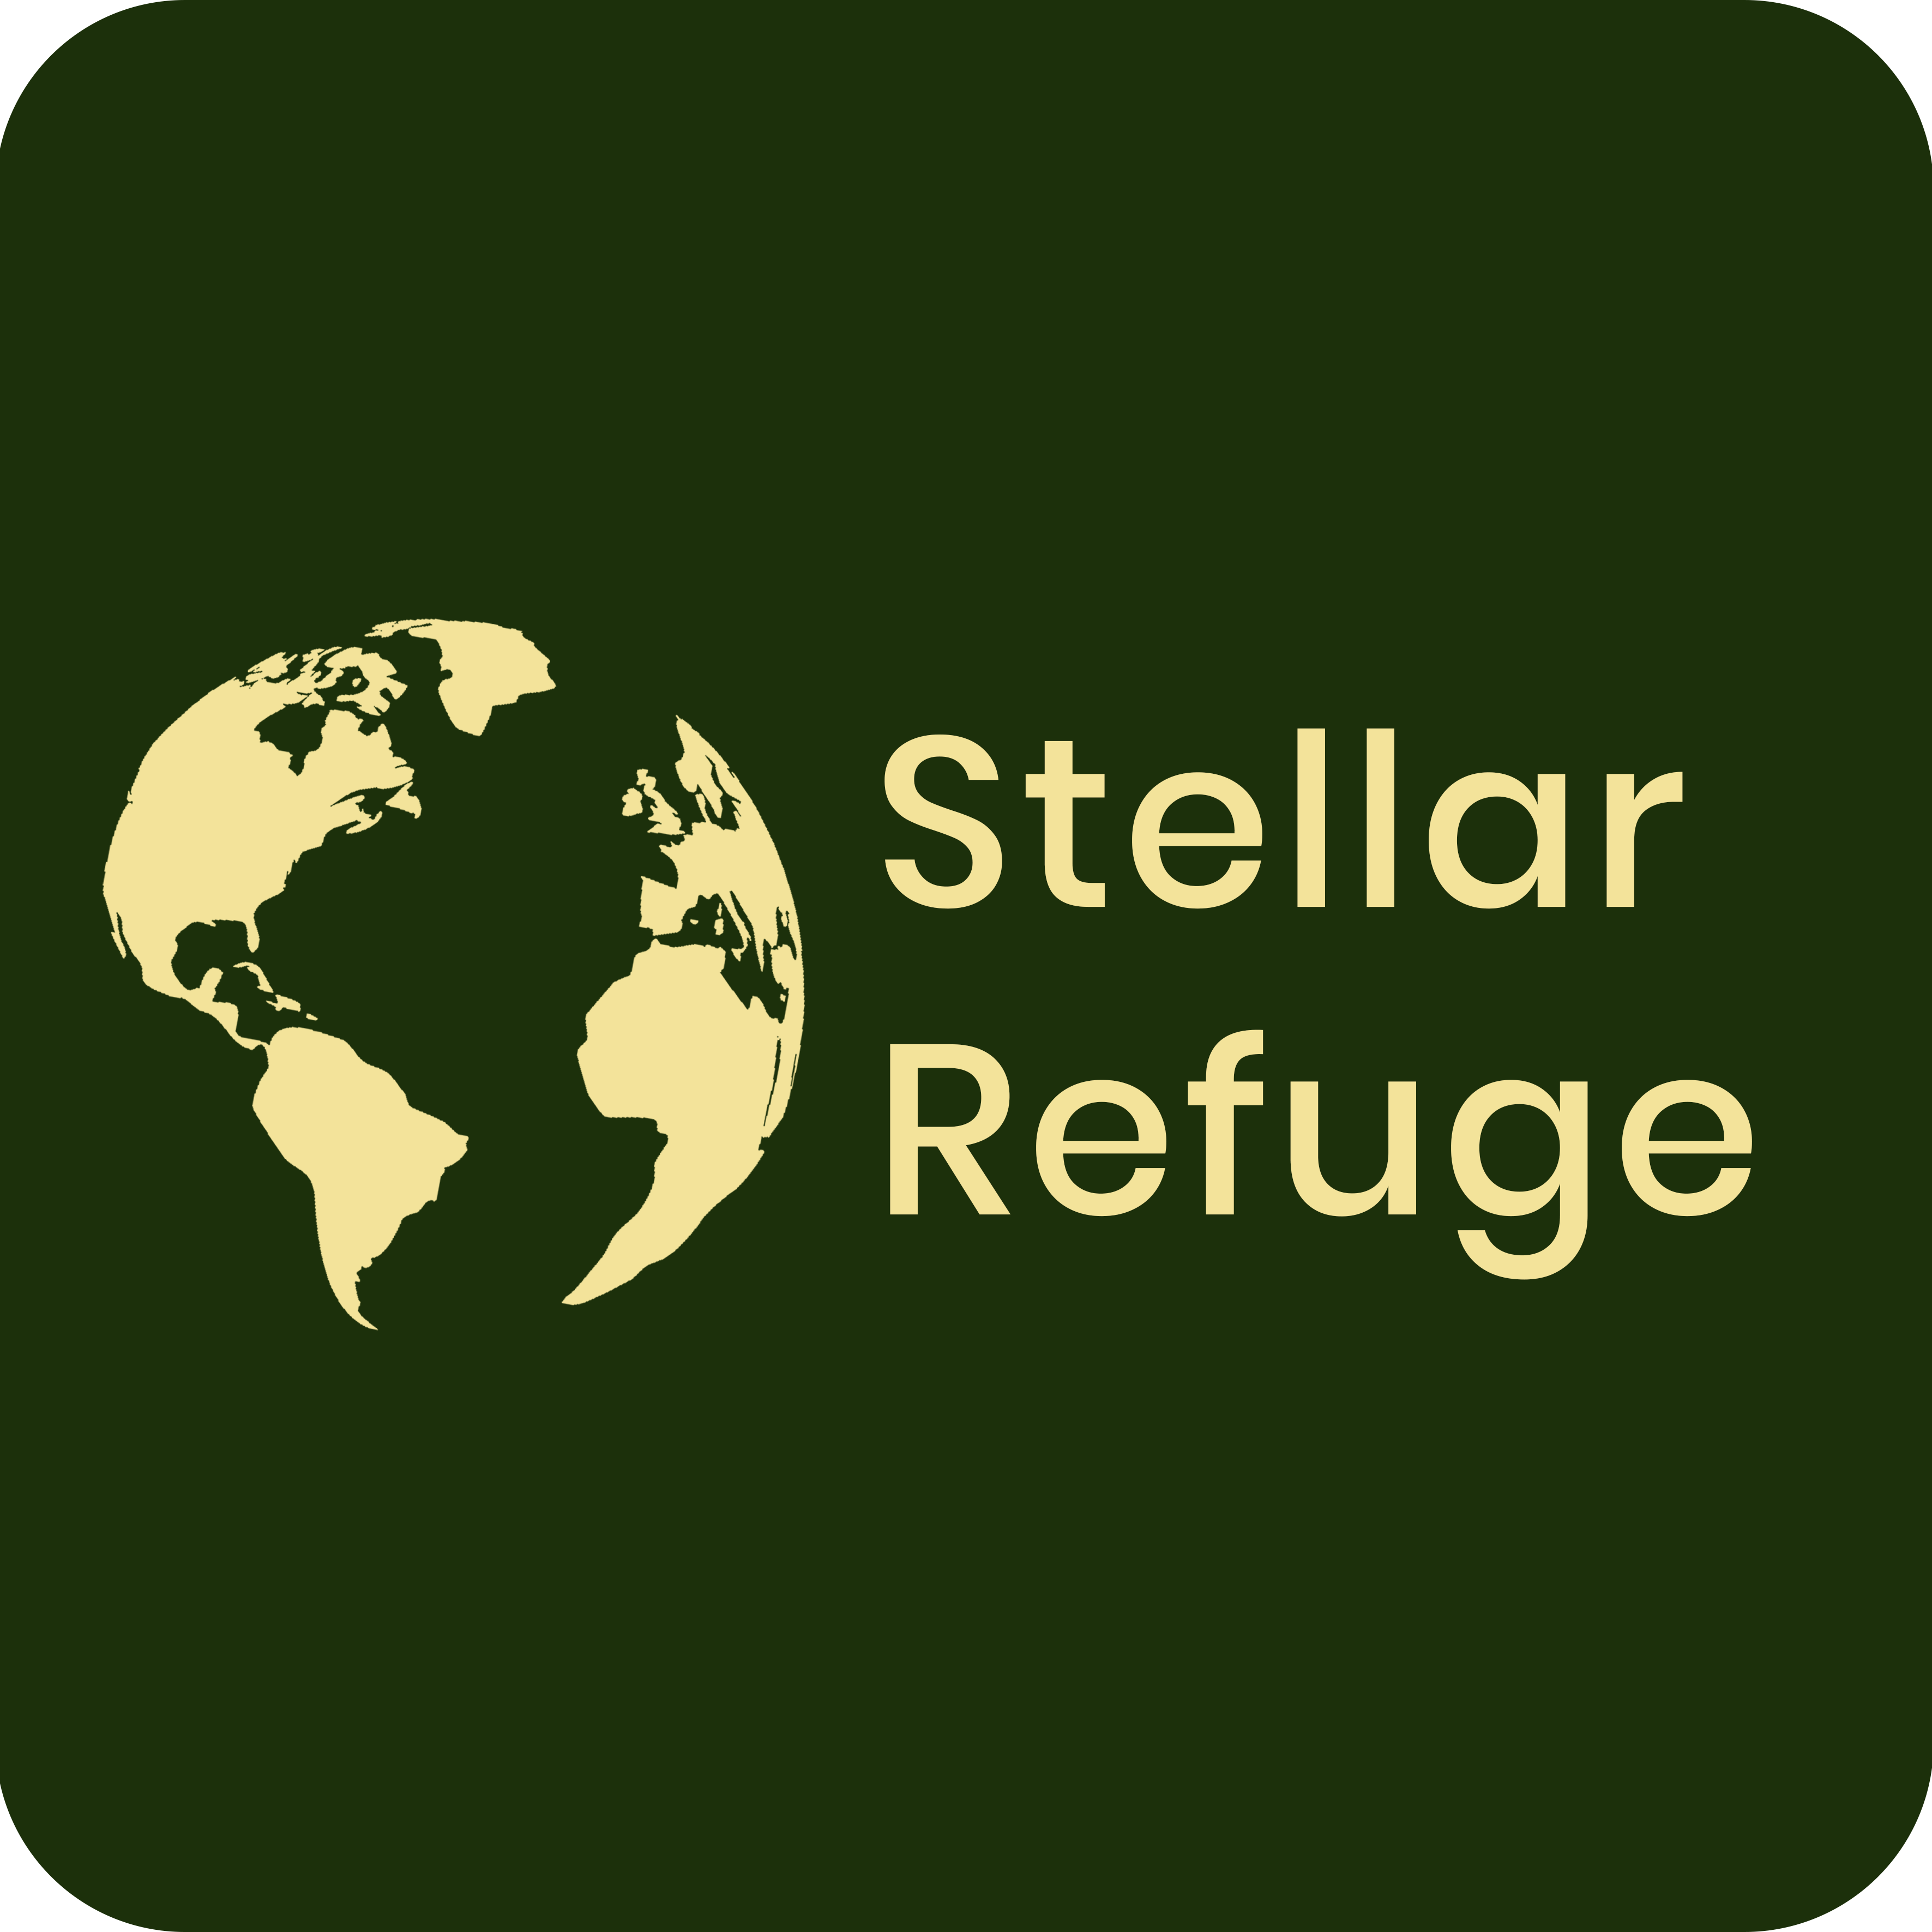 Stellar Refuges